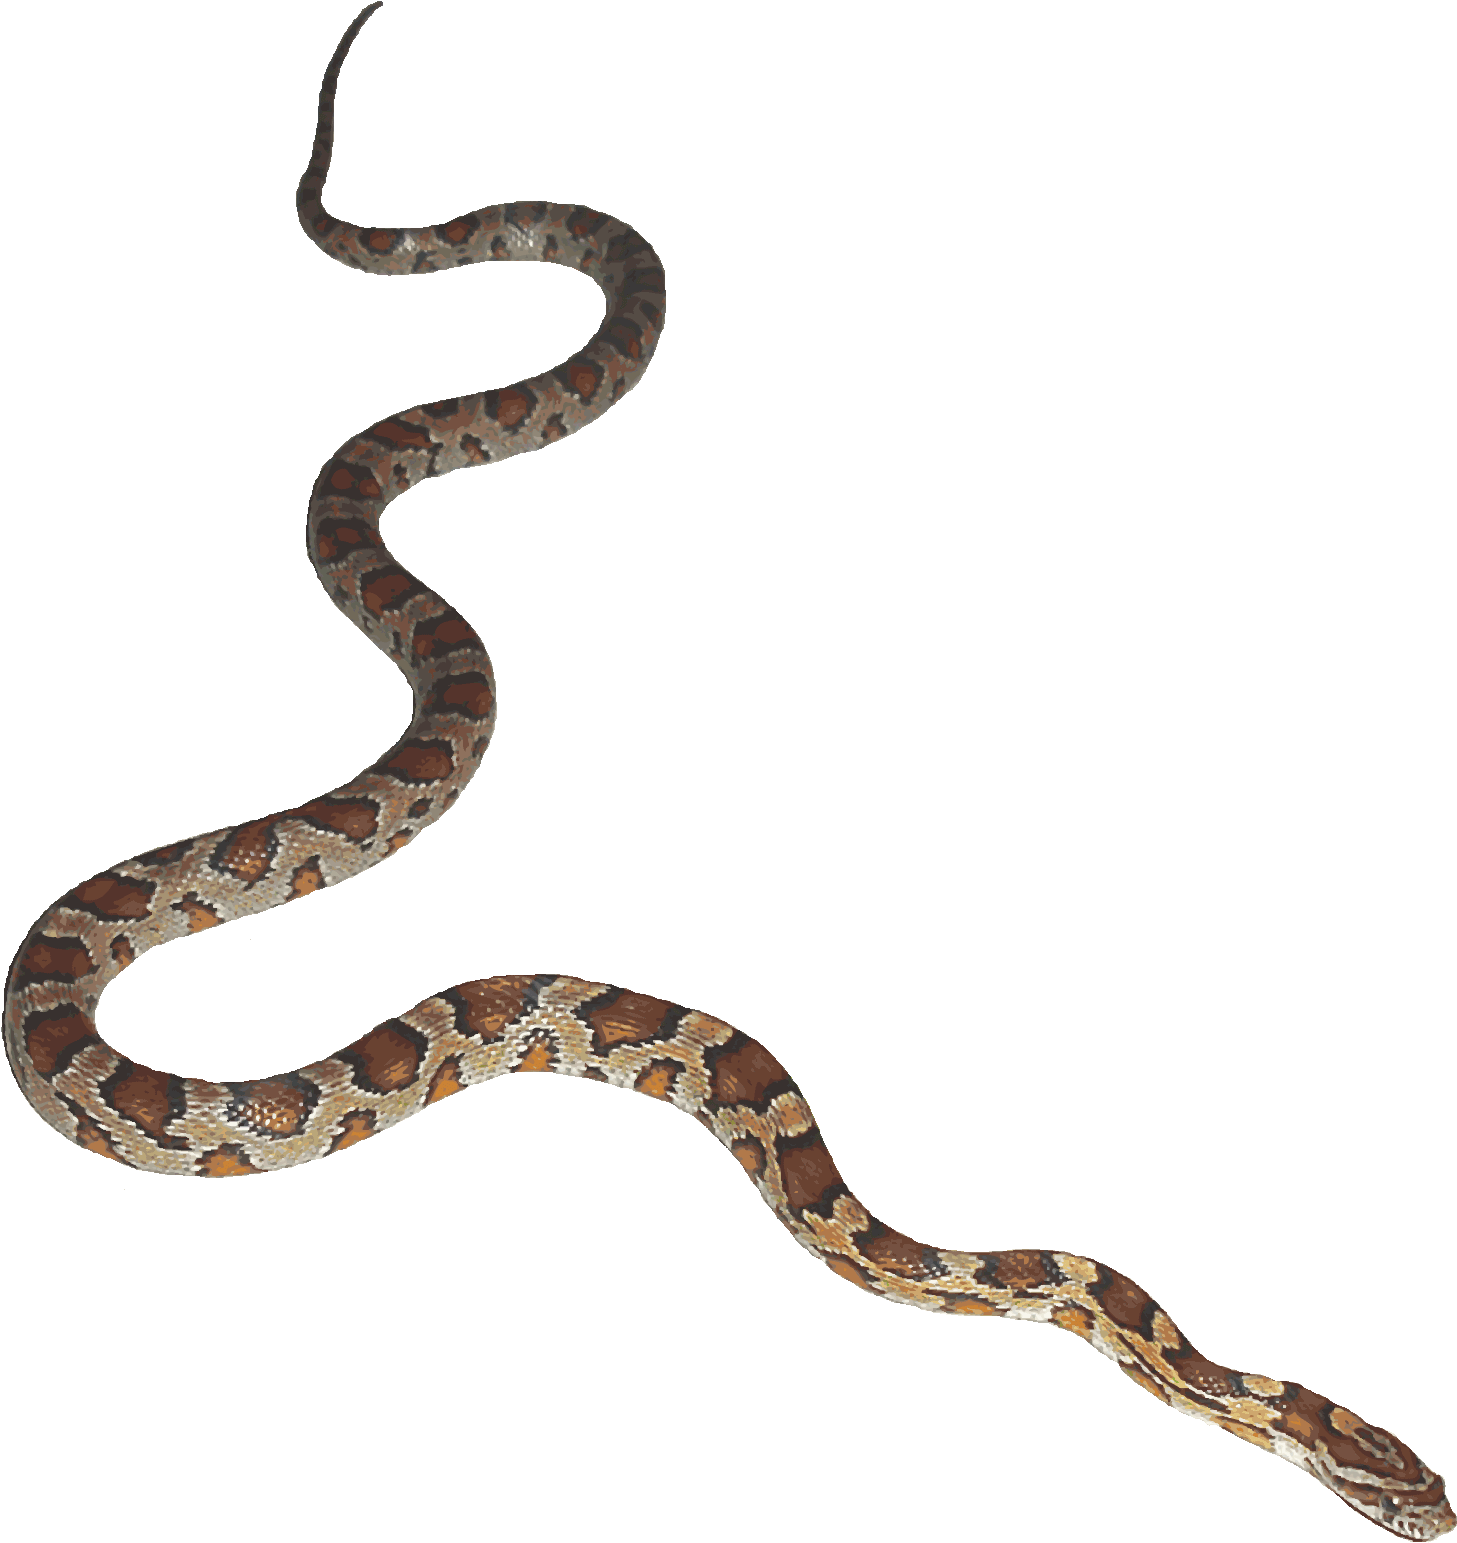 Python Logo Clipart Bull Snake - Snake Transparent Background (1493x1598)